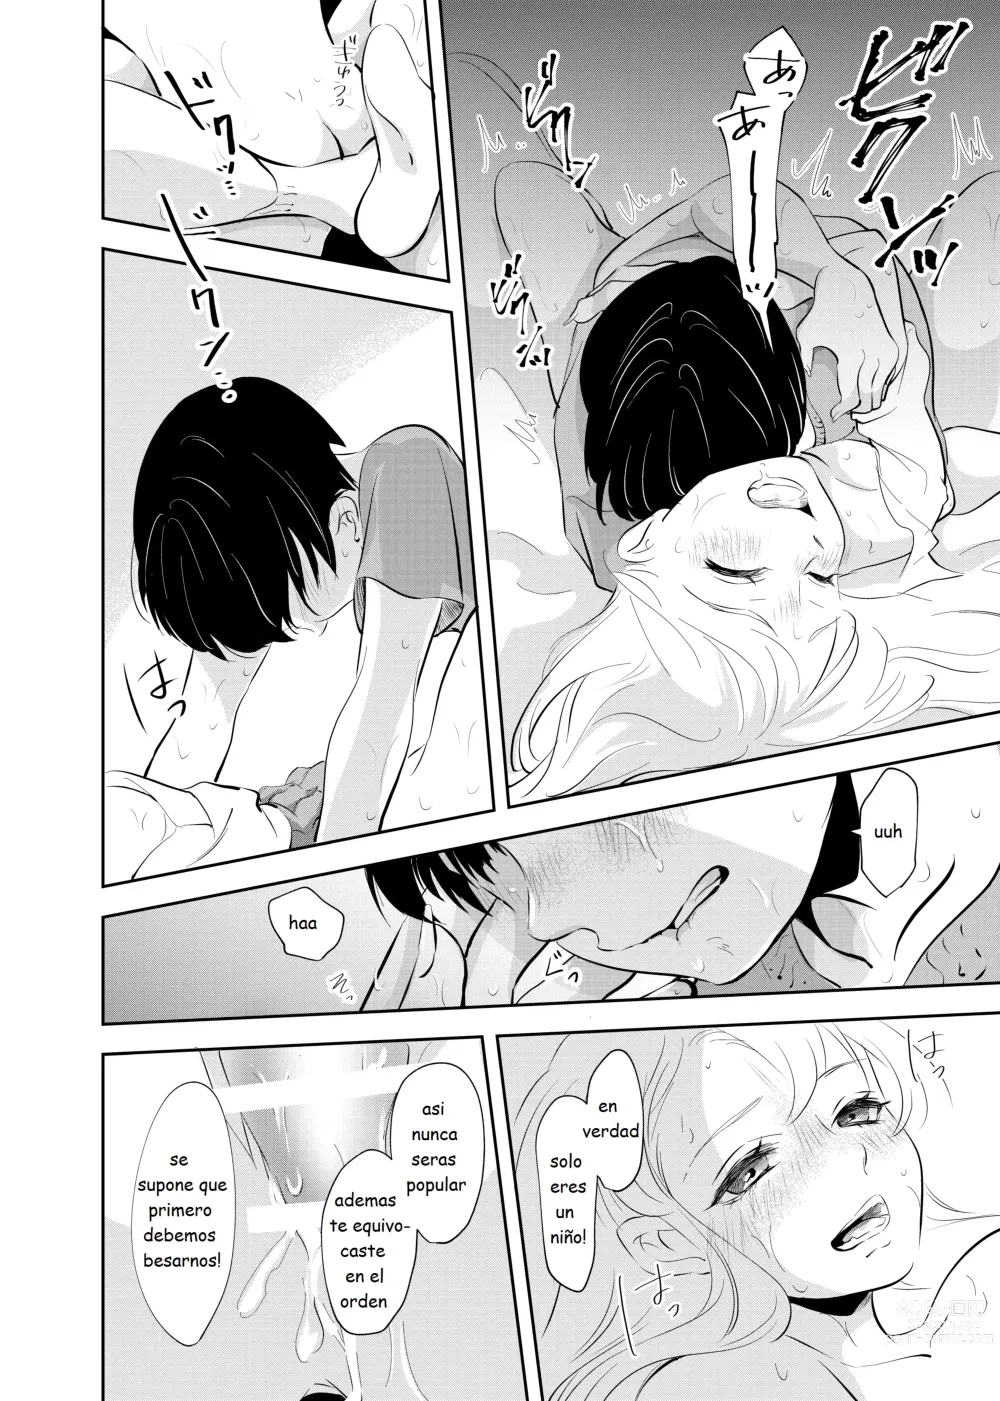 Page 33 of doujinshi Despues de la escuela